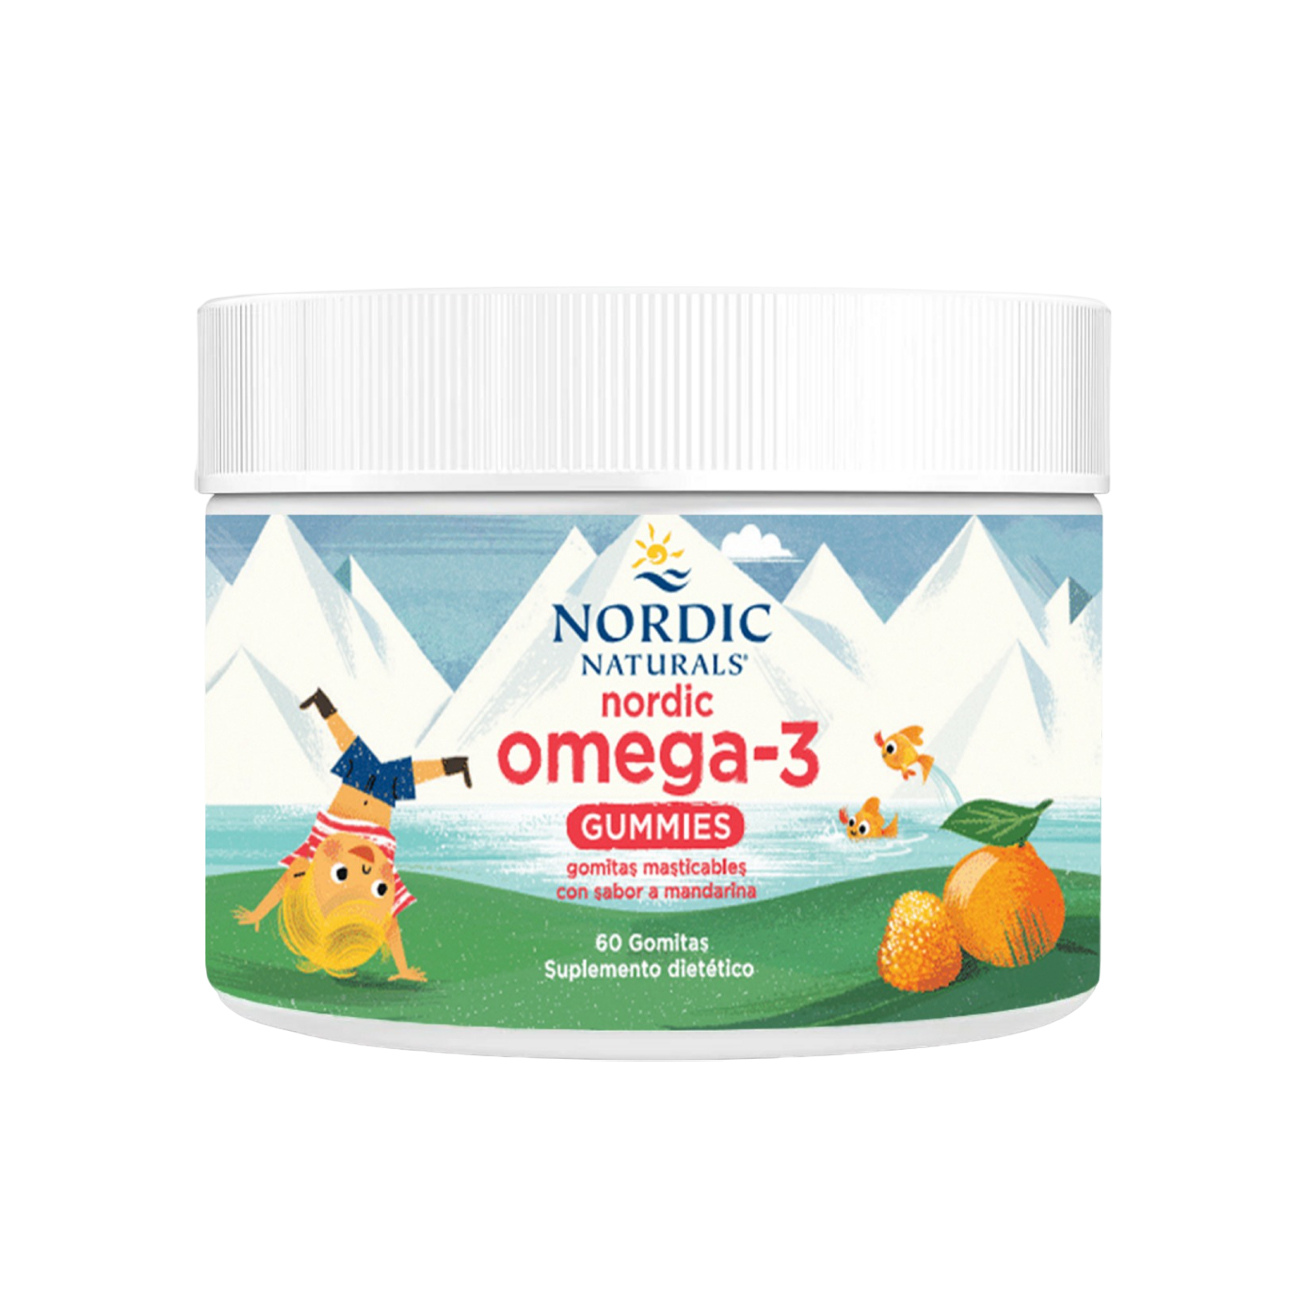 Nordic Naturals Nordic Omega 3 Gummies x 60 Gomitas